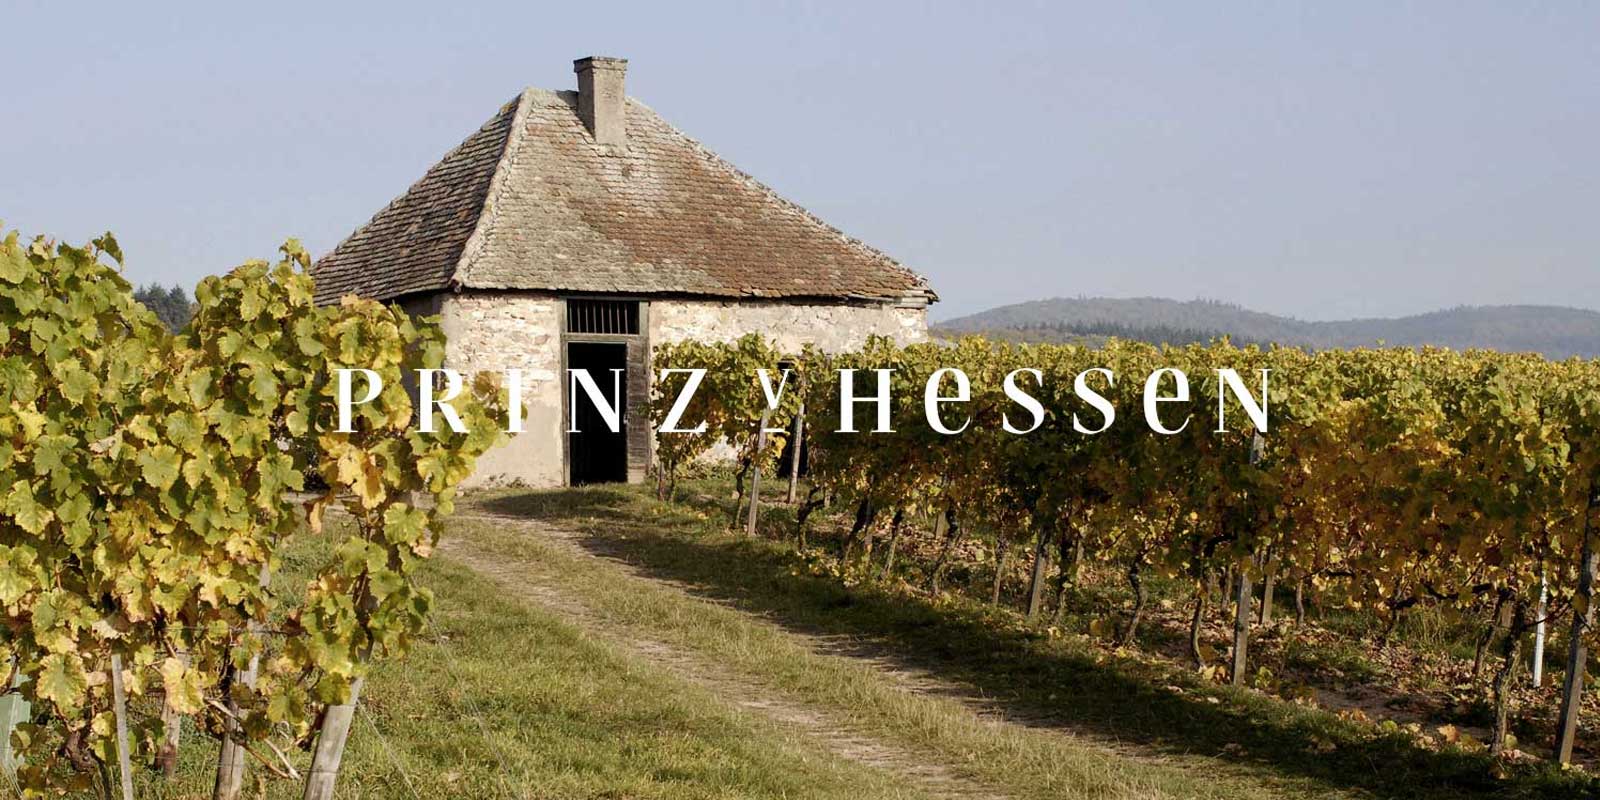 Winiarnia Prince of Hesse - region winiarski Rheingau Winiarnia PRINZ VON HESSEN w Johannisberg w Rheingau jest jednym z wybitnych producentow Rieslinga w Niemczech i jest czlonkiem-zalozycielem VDP regionalnego stowarzyszenia Rheingau. Liczne wyroznienia w kraju i za granica swiadcza o tym, ze winiarnia PRINZ VON HESSEN stoi na najwyzszym poziomie. Wina i wina musujace z winnicy PRINZ VON HESSEN zdobyly wiele nagrod i otrzymaly wysokie miedzynarodowe wyroznienia.